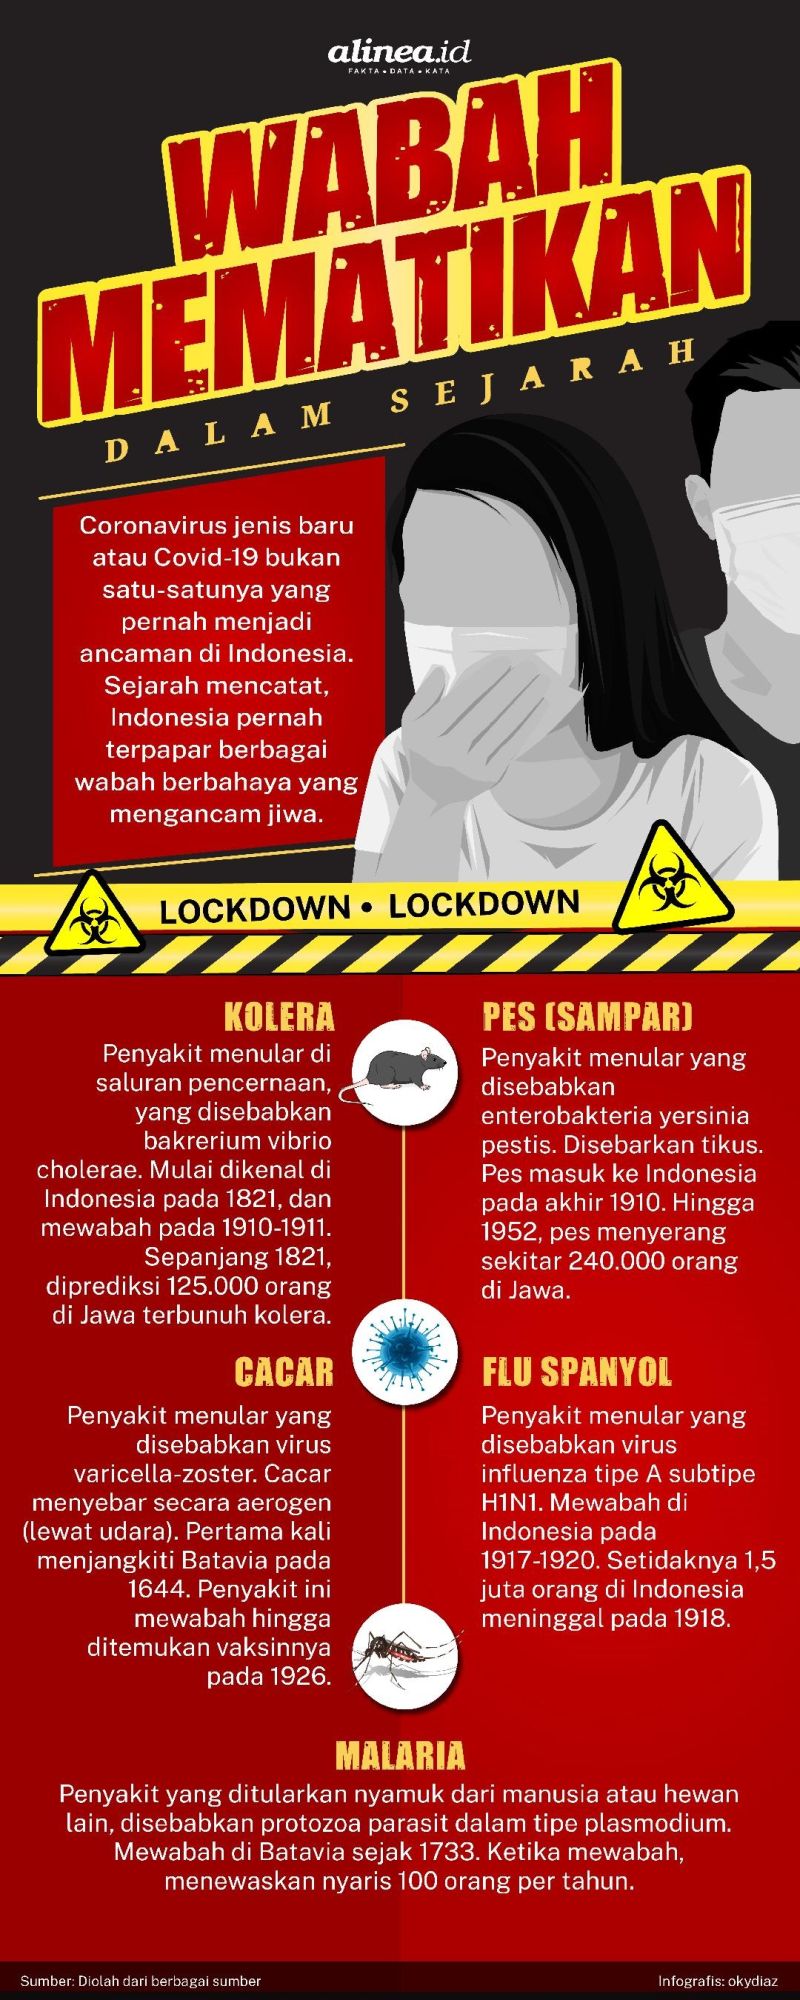 Influenza adalah contoh penyakit yang masuk melalui saluran